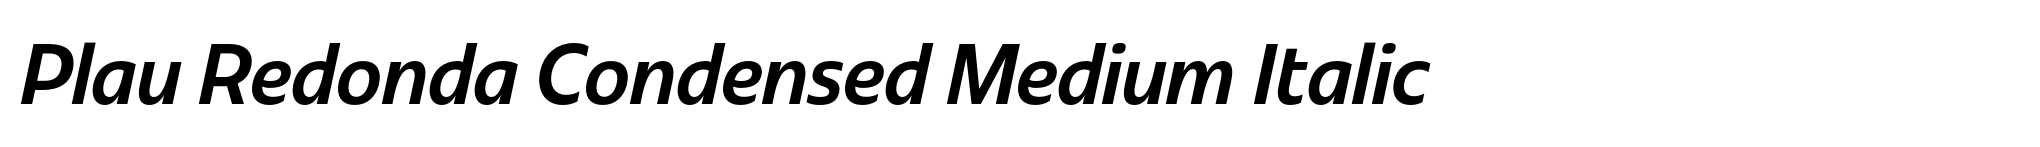 Plau Redonda Condensed Medium Italic image